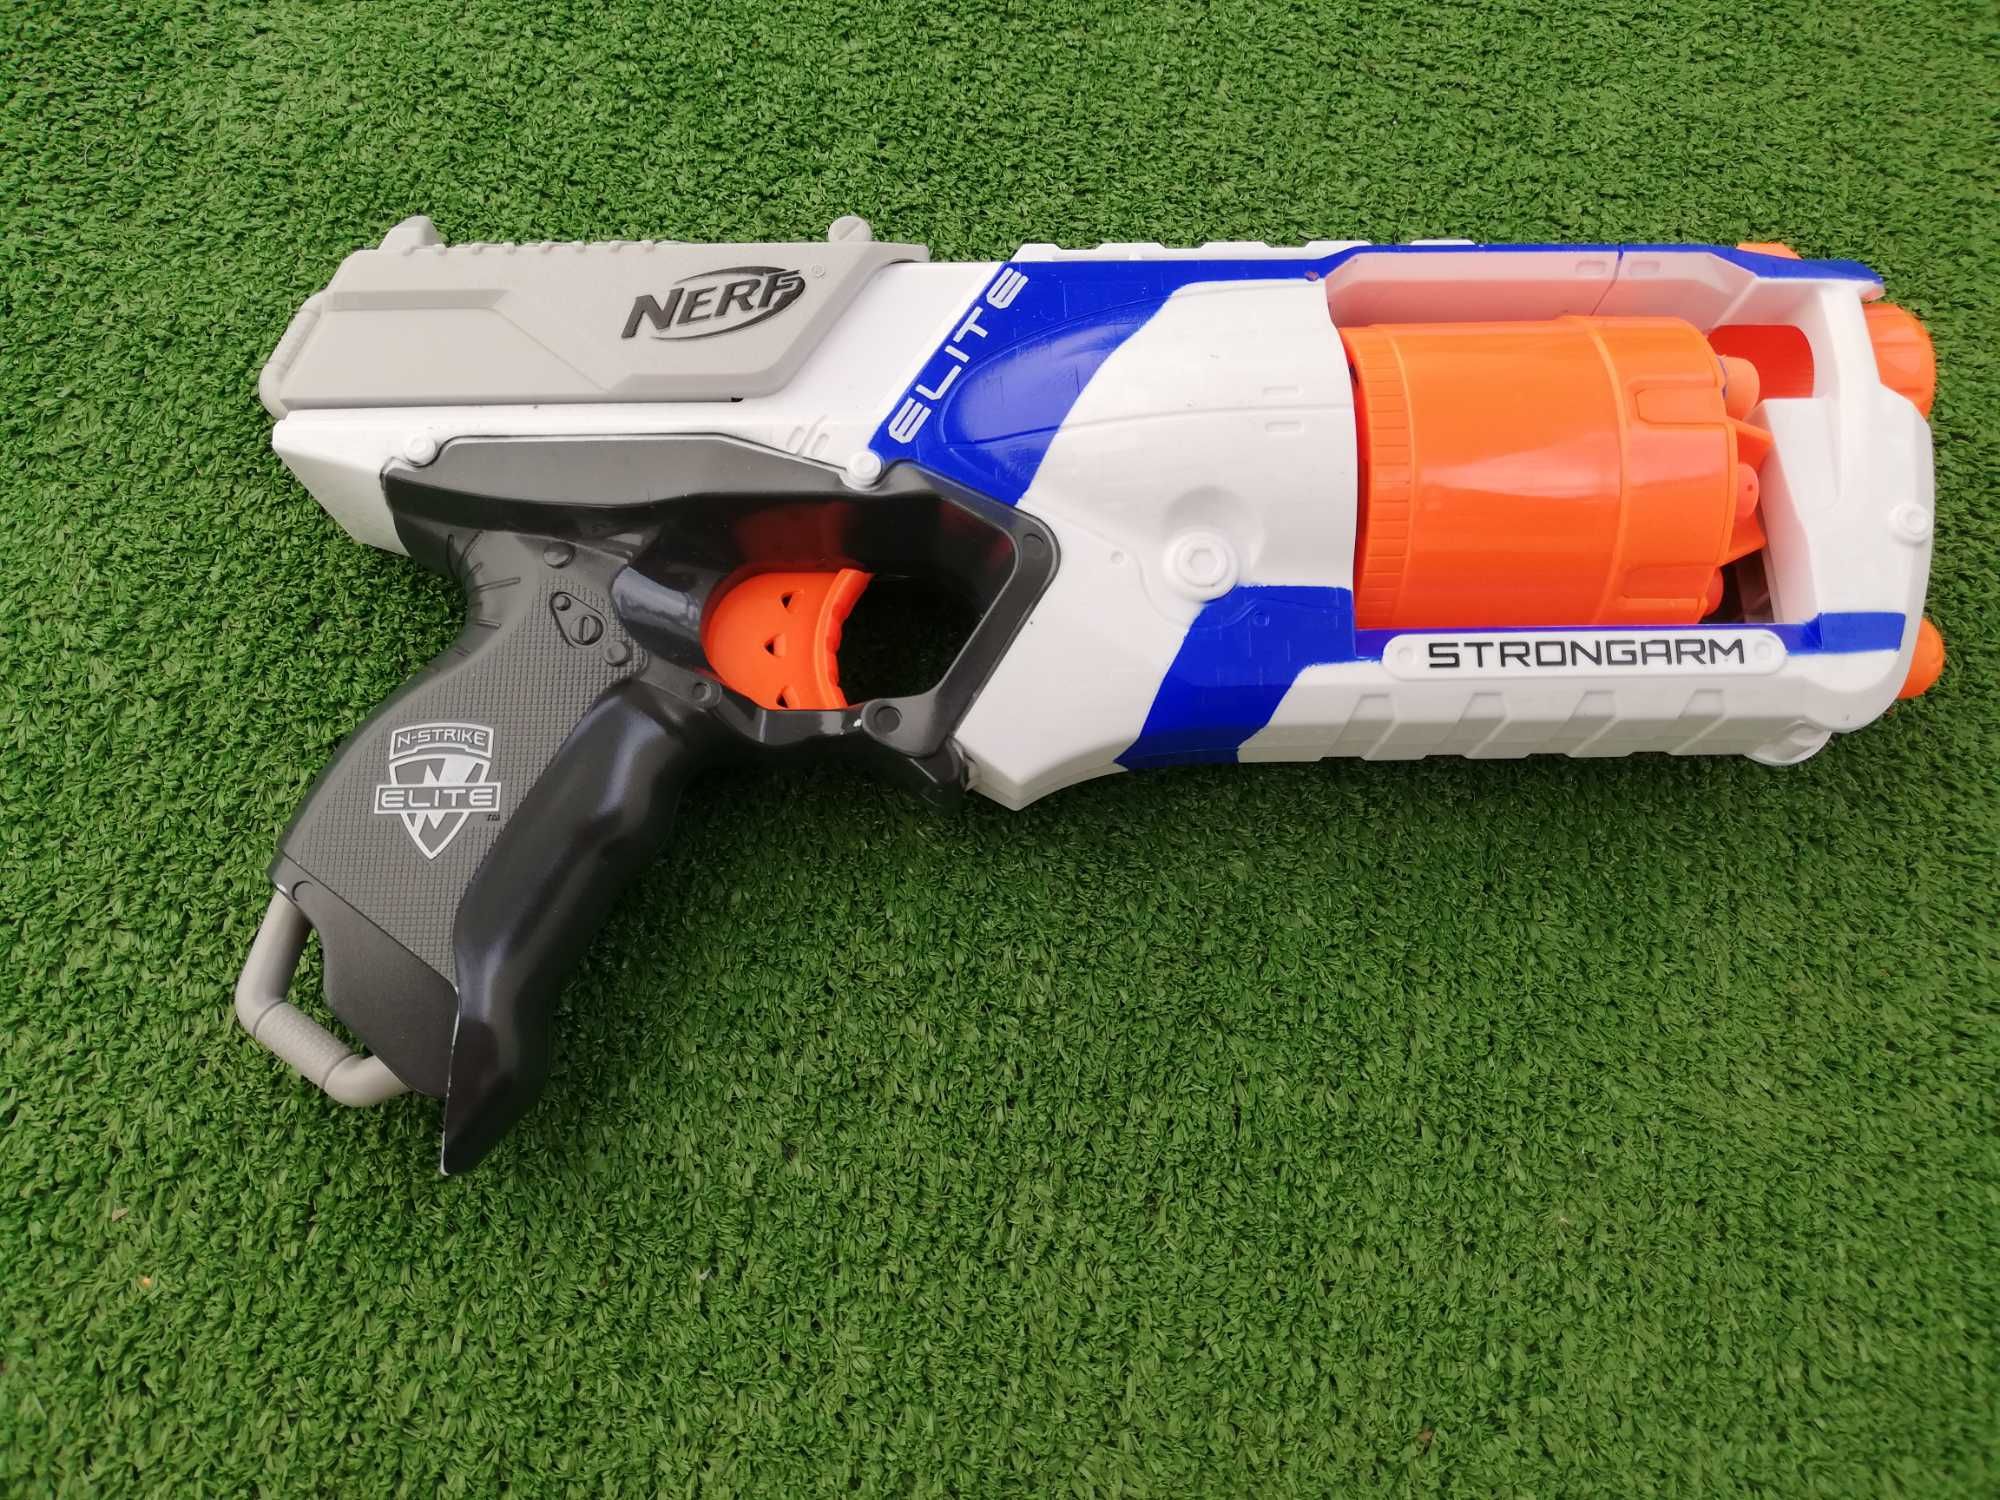 Pistolet Nerf - super zabawa dla chłopca